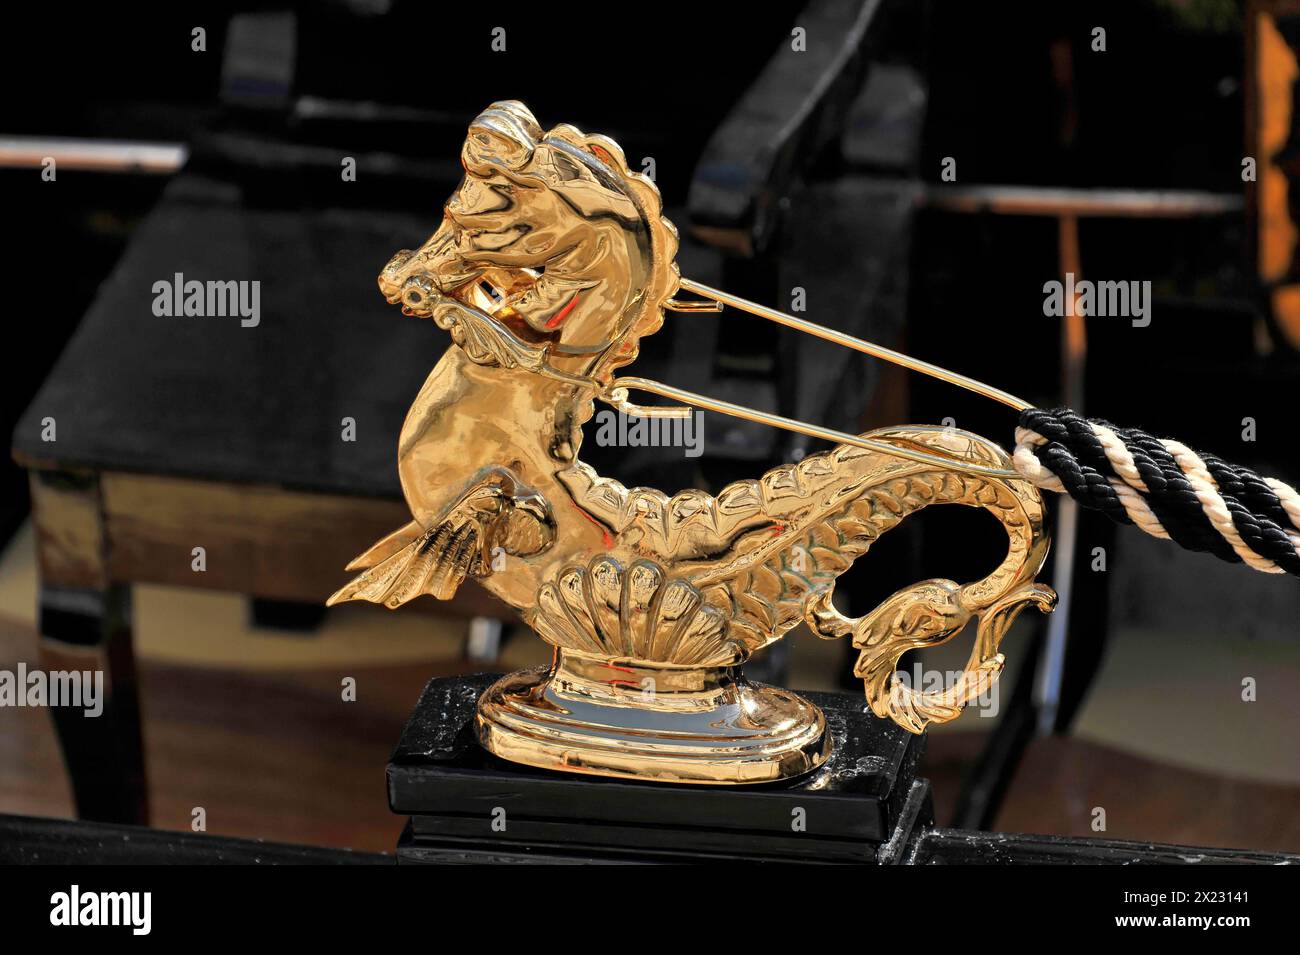 Close-up of a shiny golden seahorse figure on a Venetian gondola, Venice, Veneto, Italy Stock Photo